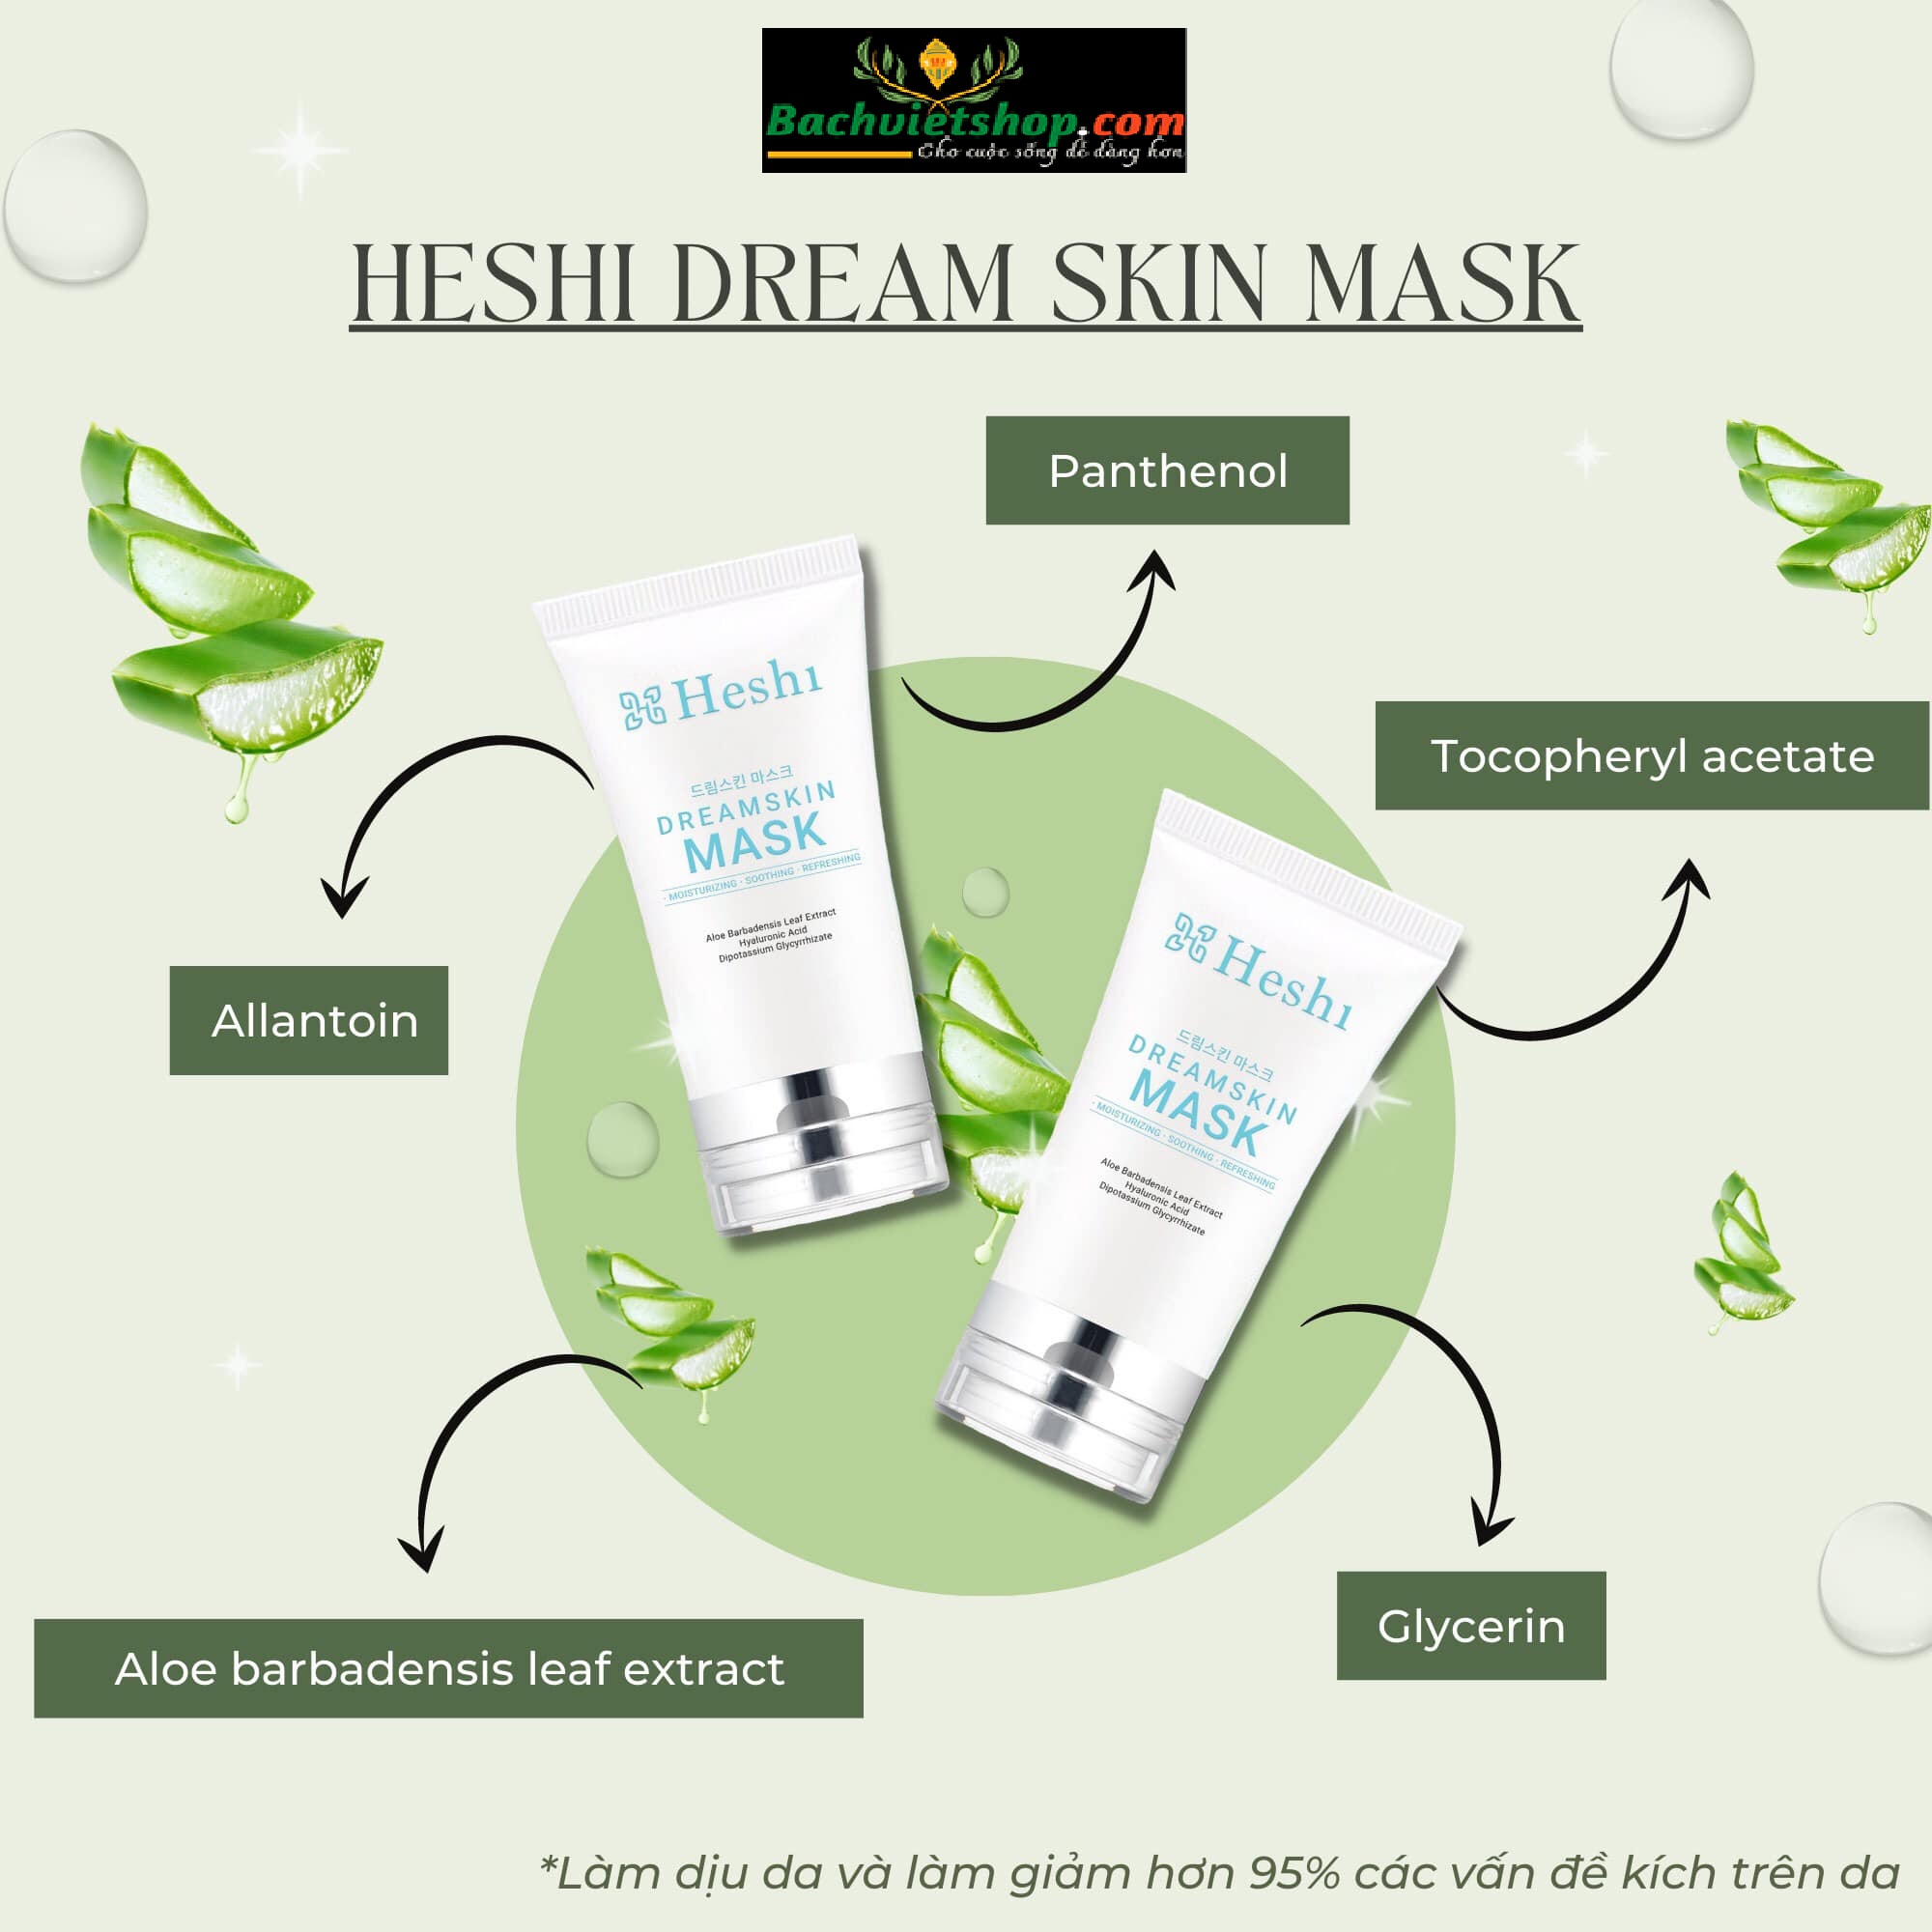 Mặt Nạ Gel Heshi Dream Skin Mask – siêu phẩm của Heshi với khả năng bổ sung độ ẩm tức thì